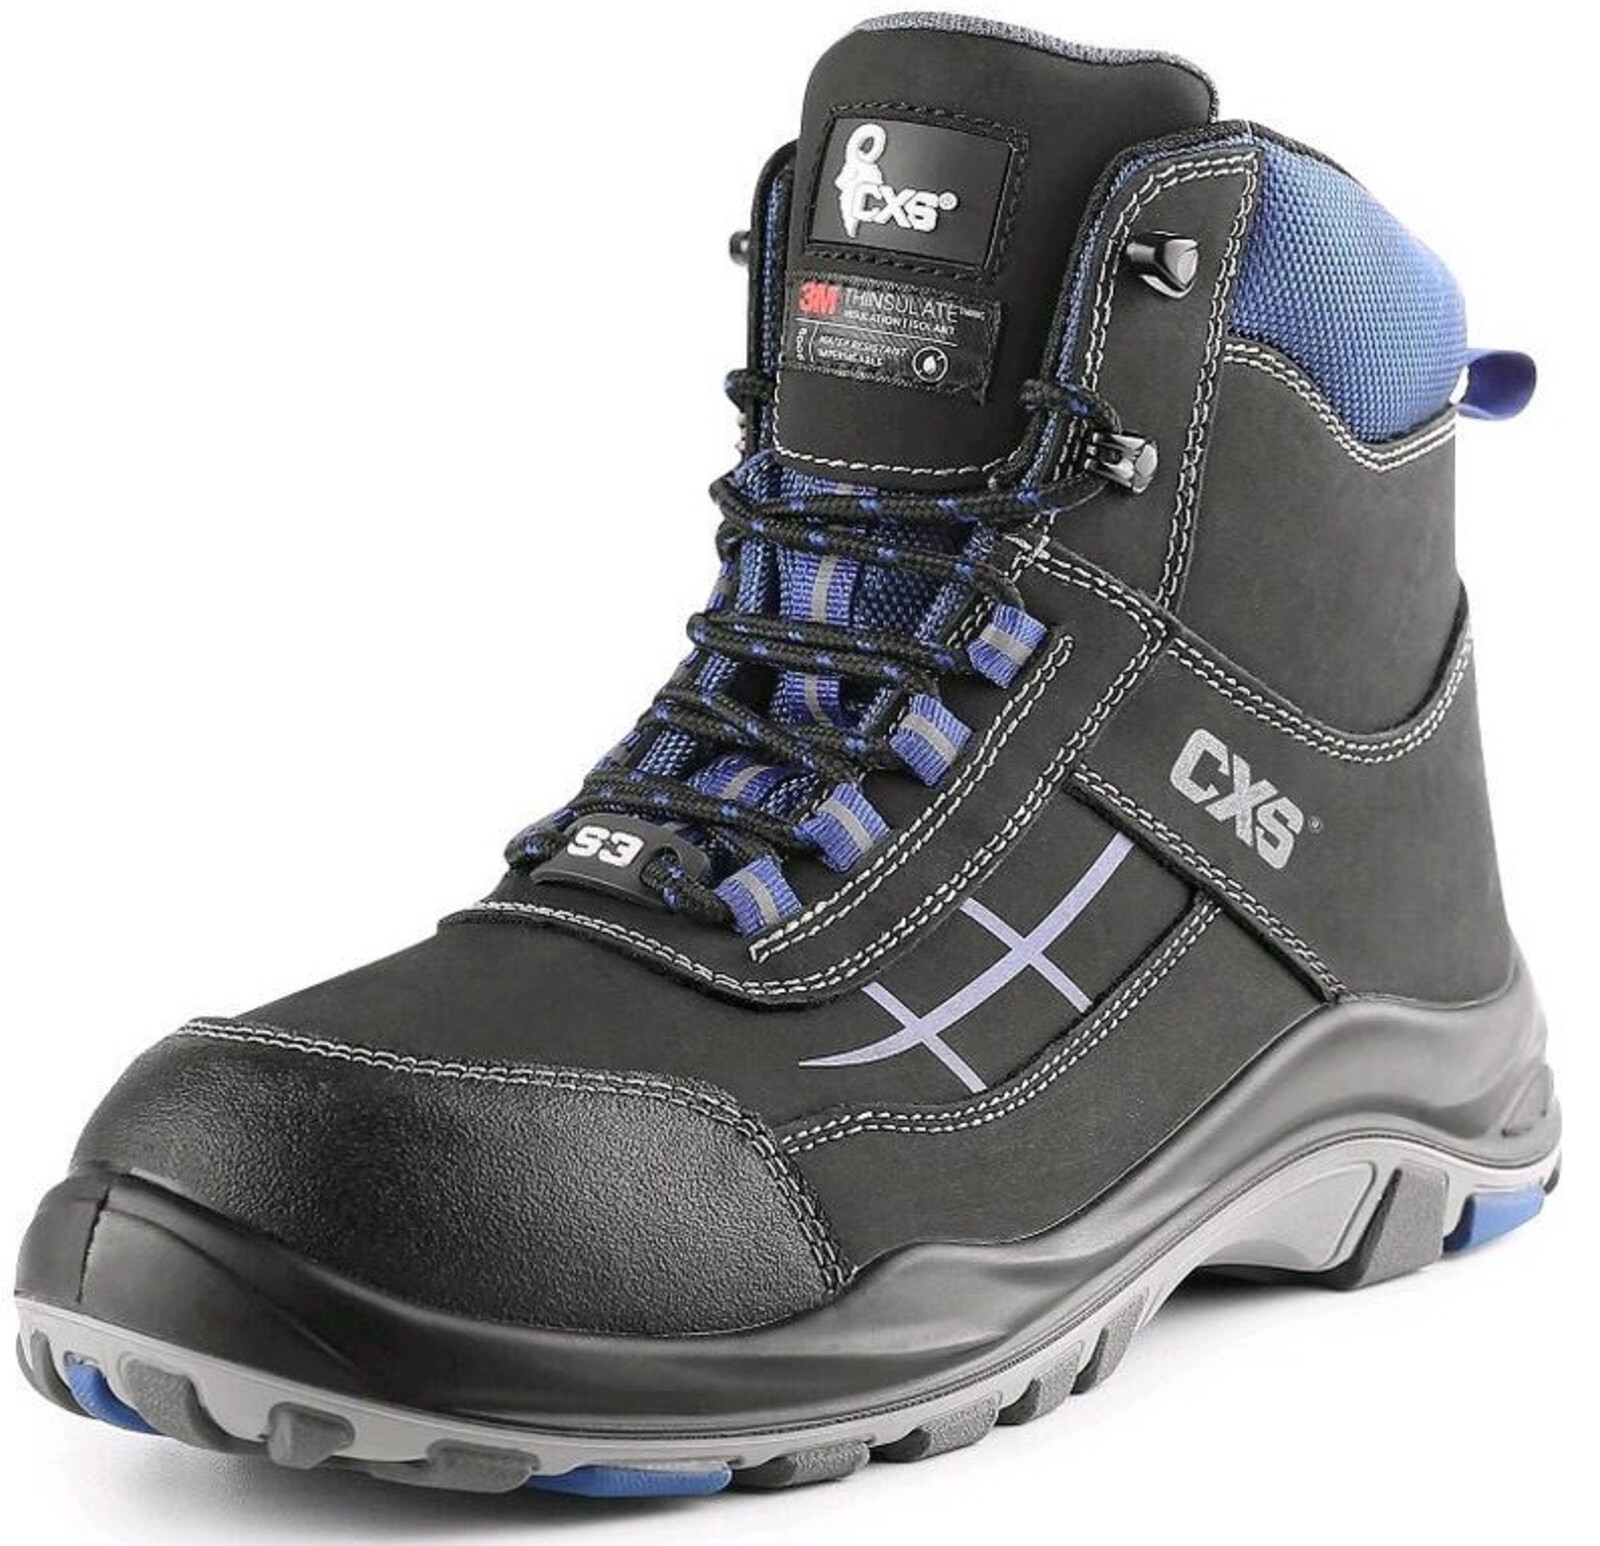 Zateplená bezpečnostná členková obuv CXS Dog Malamute S3 CI SRC - veľkosť: 41, farba: čierna/modrá